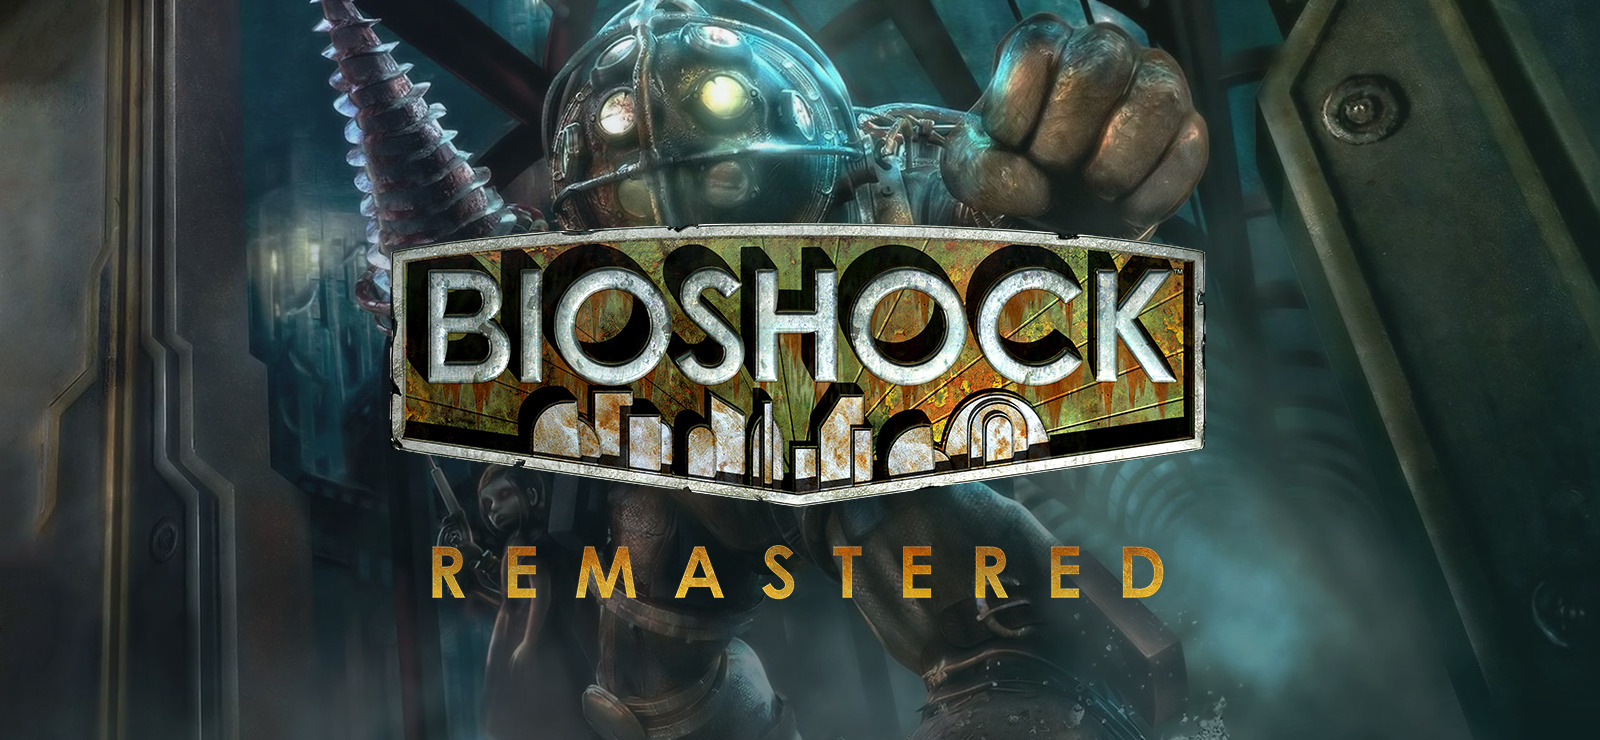 Bioshock - Remastered - красивый мир и страшная история